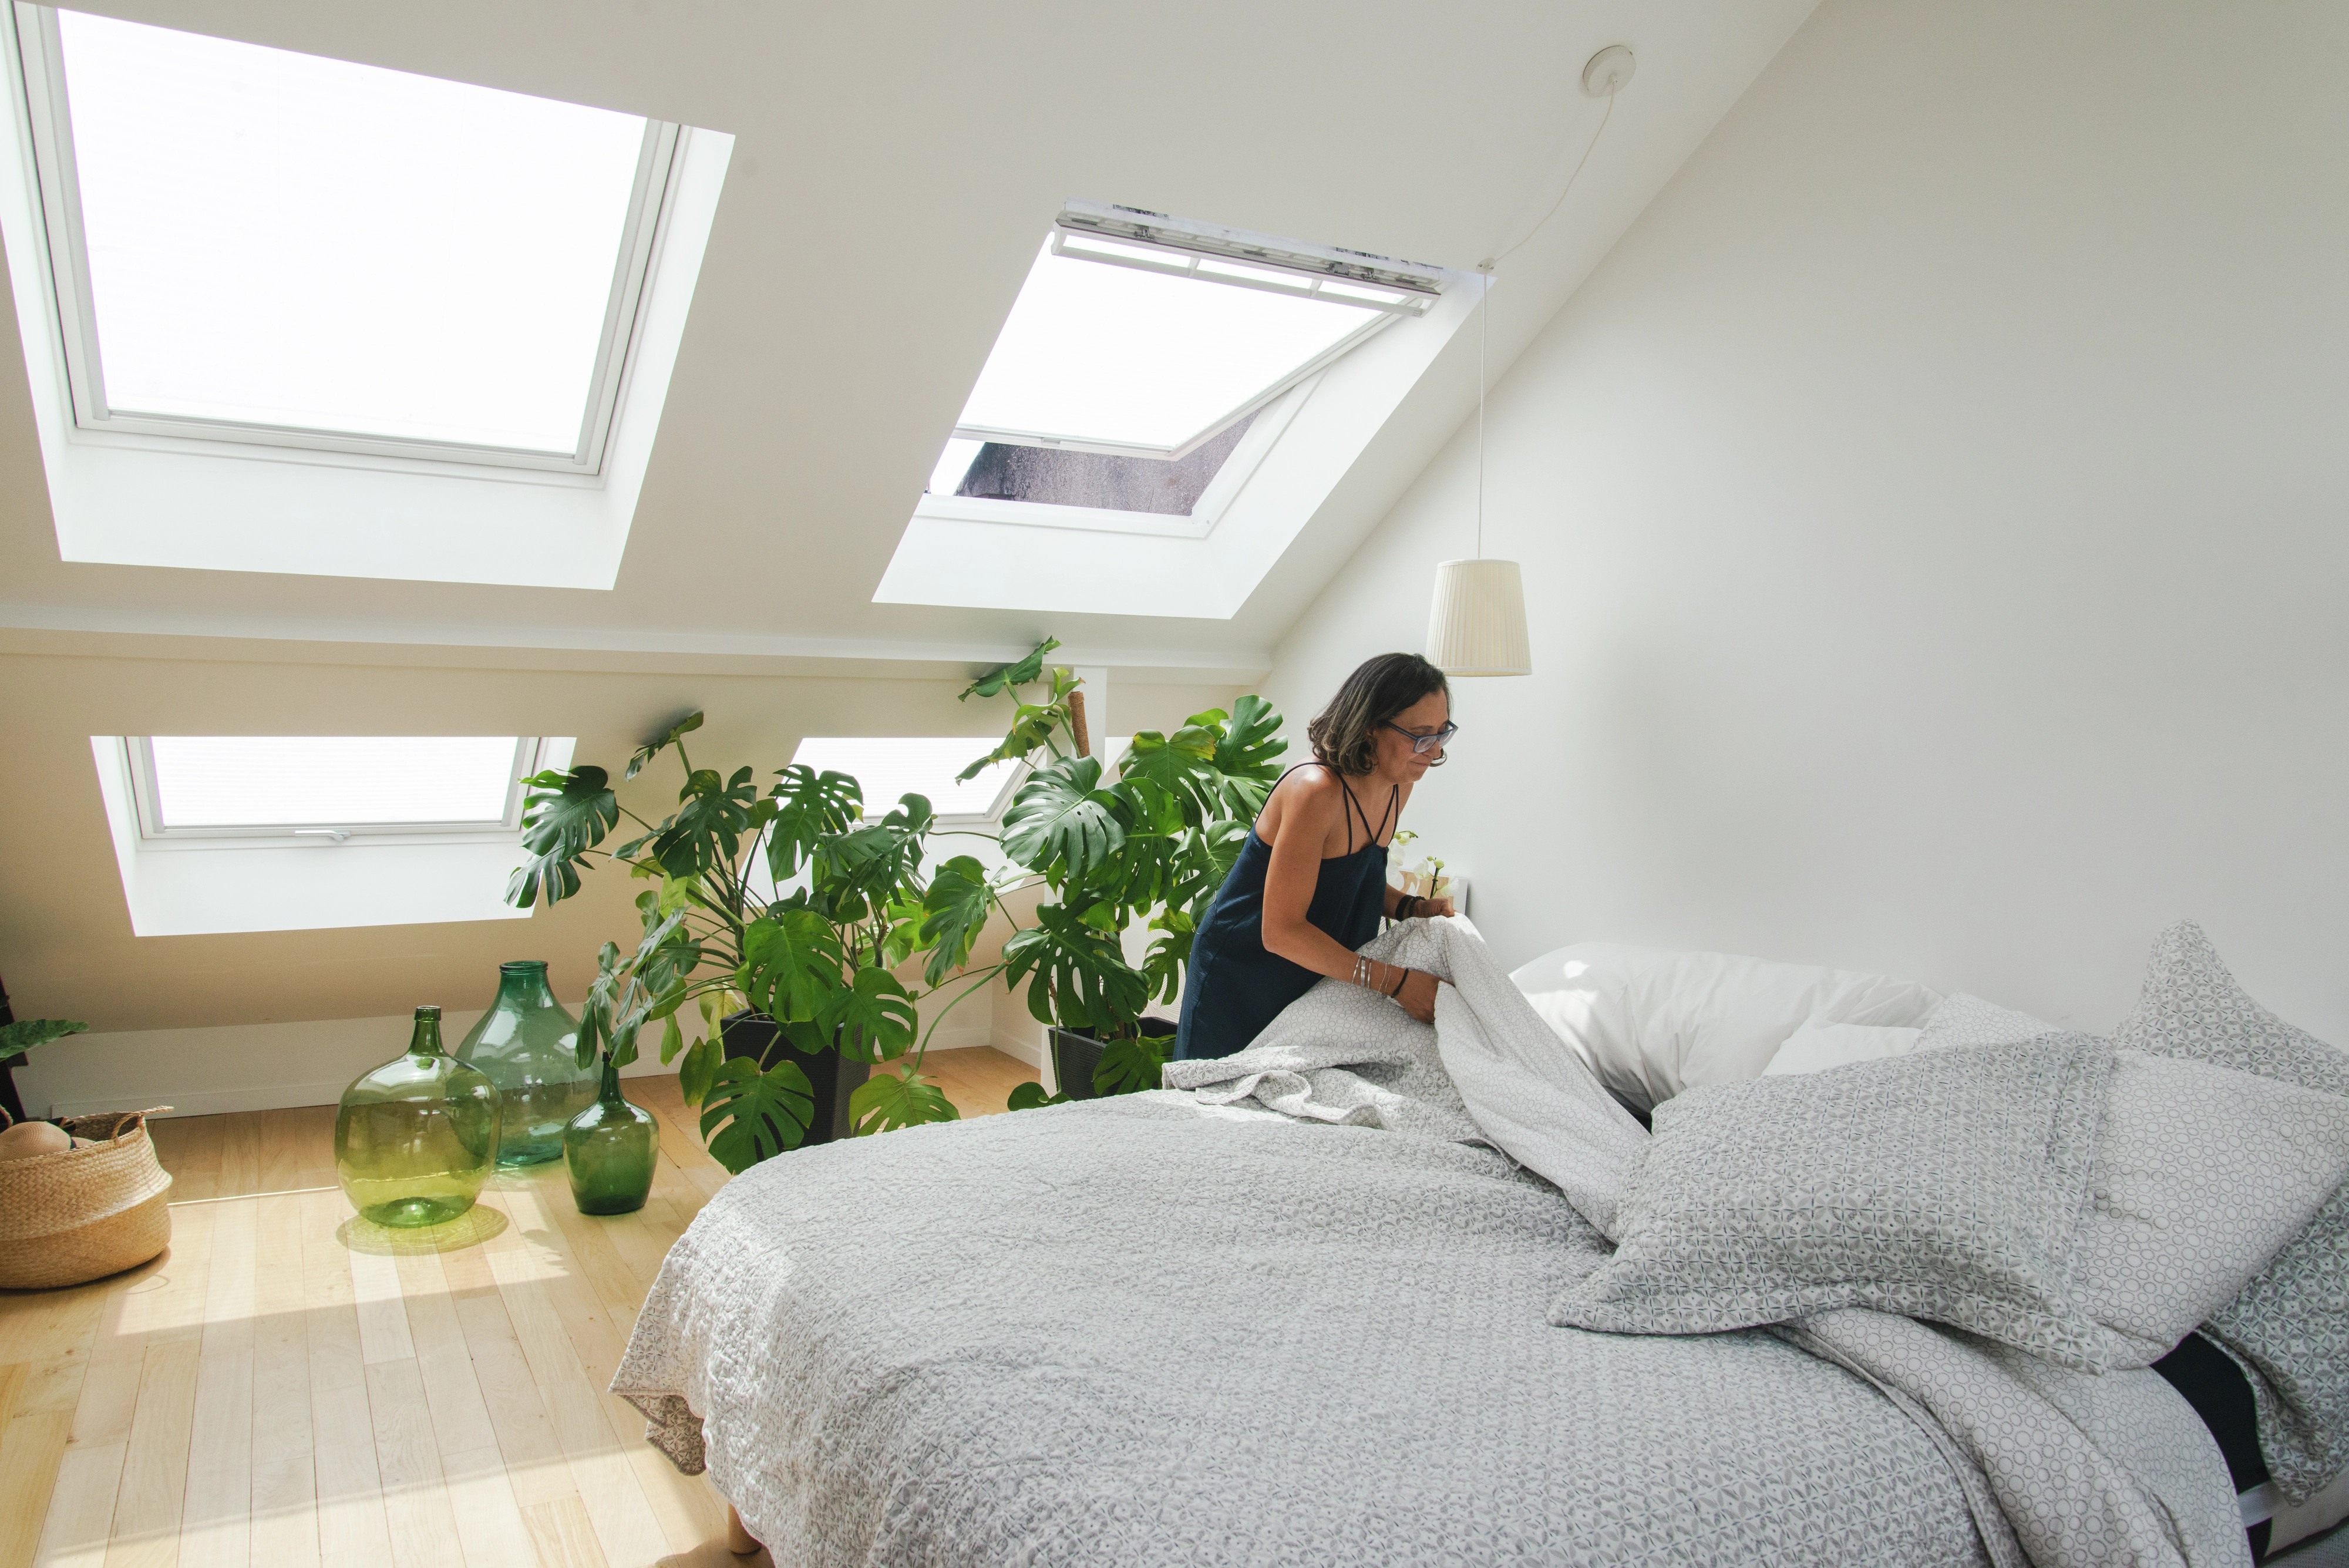 Camera da letto luminosa con finestre per tetti VELUX, piante e una coperta grigia sul letto.